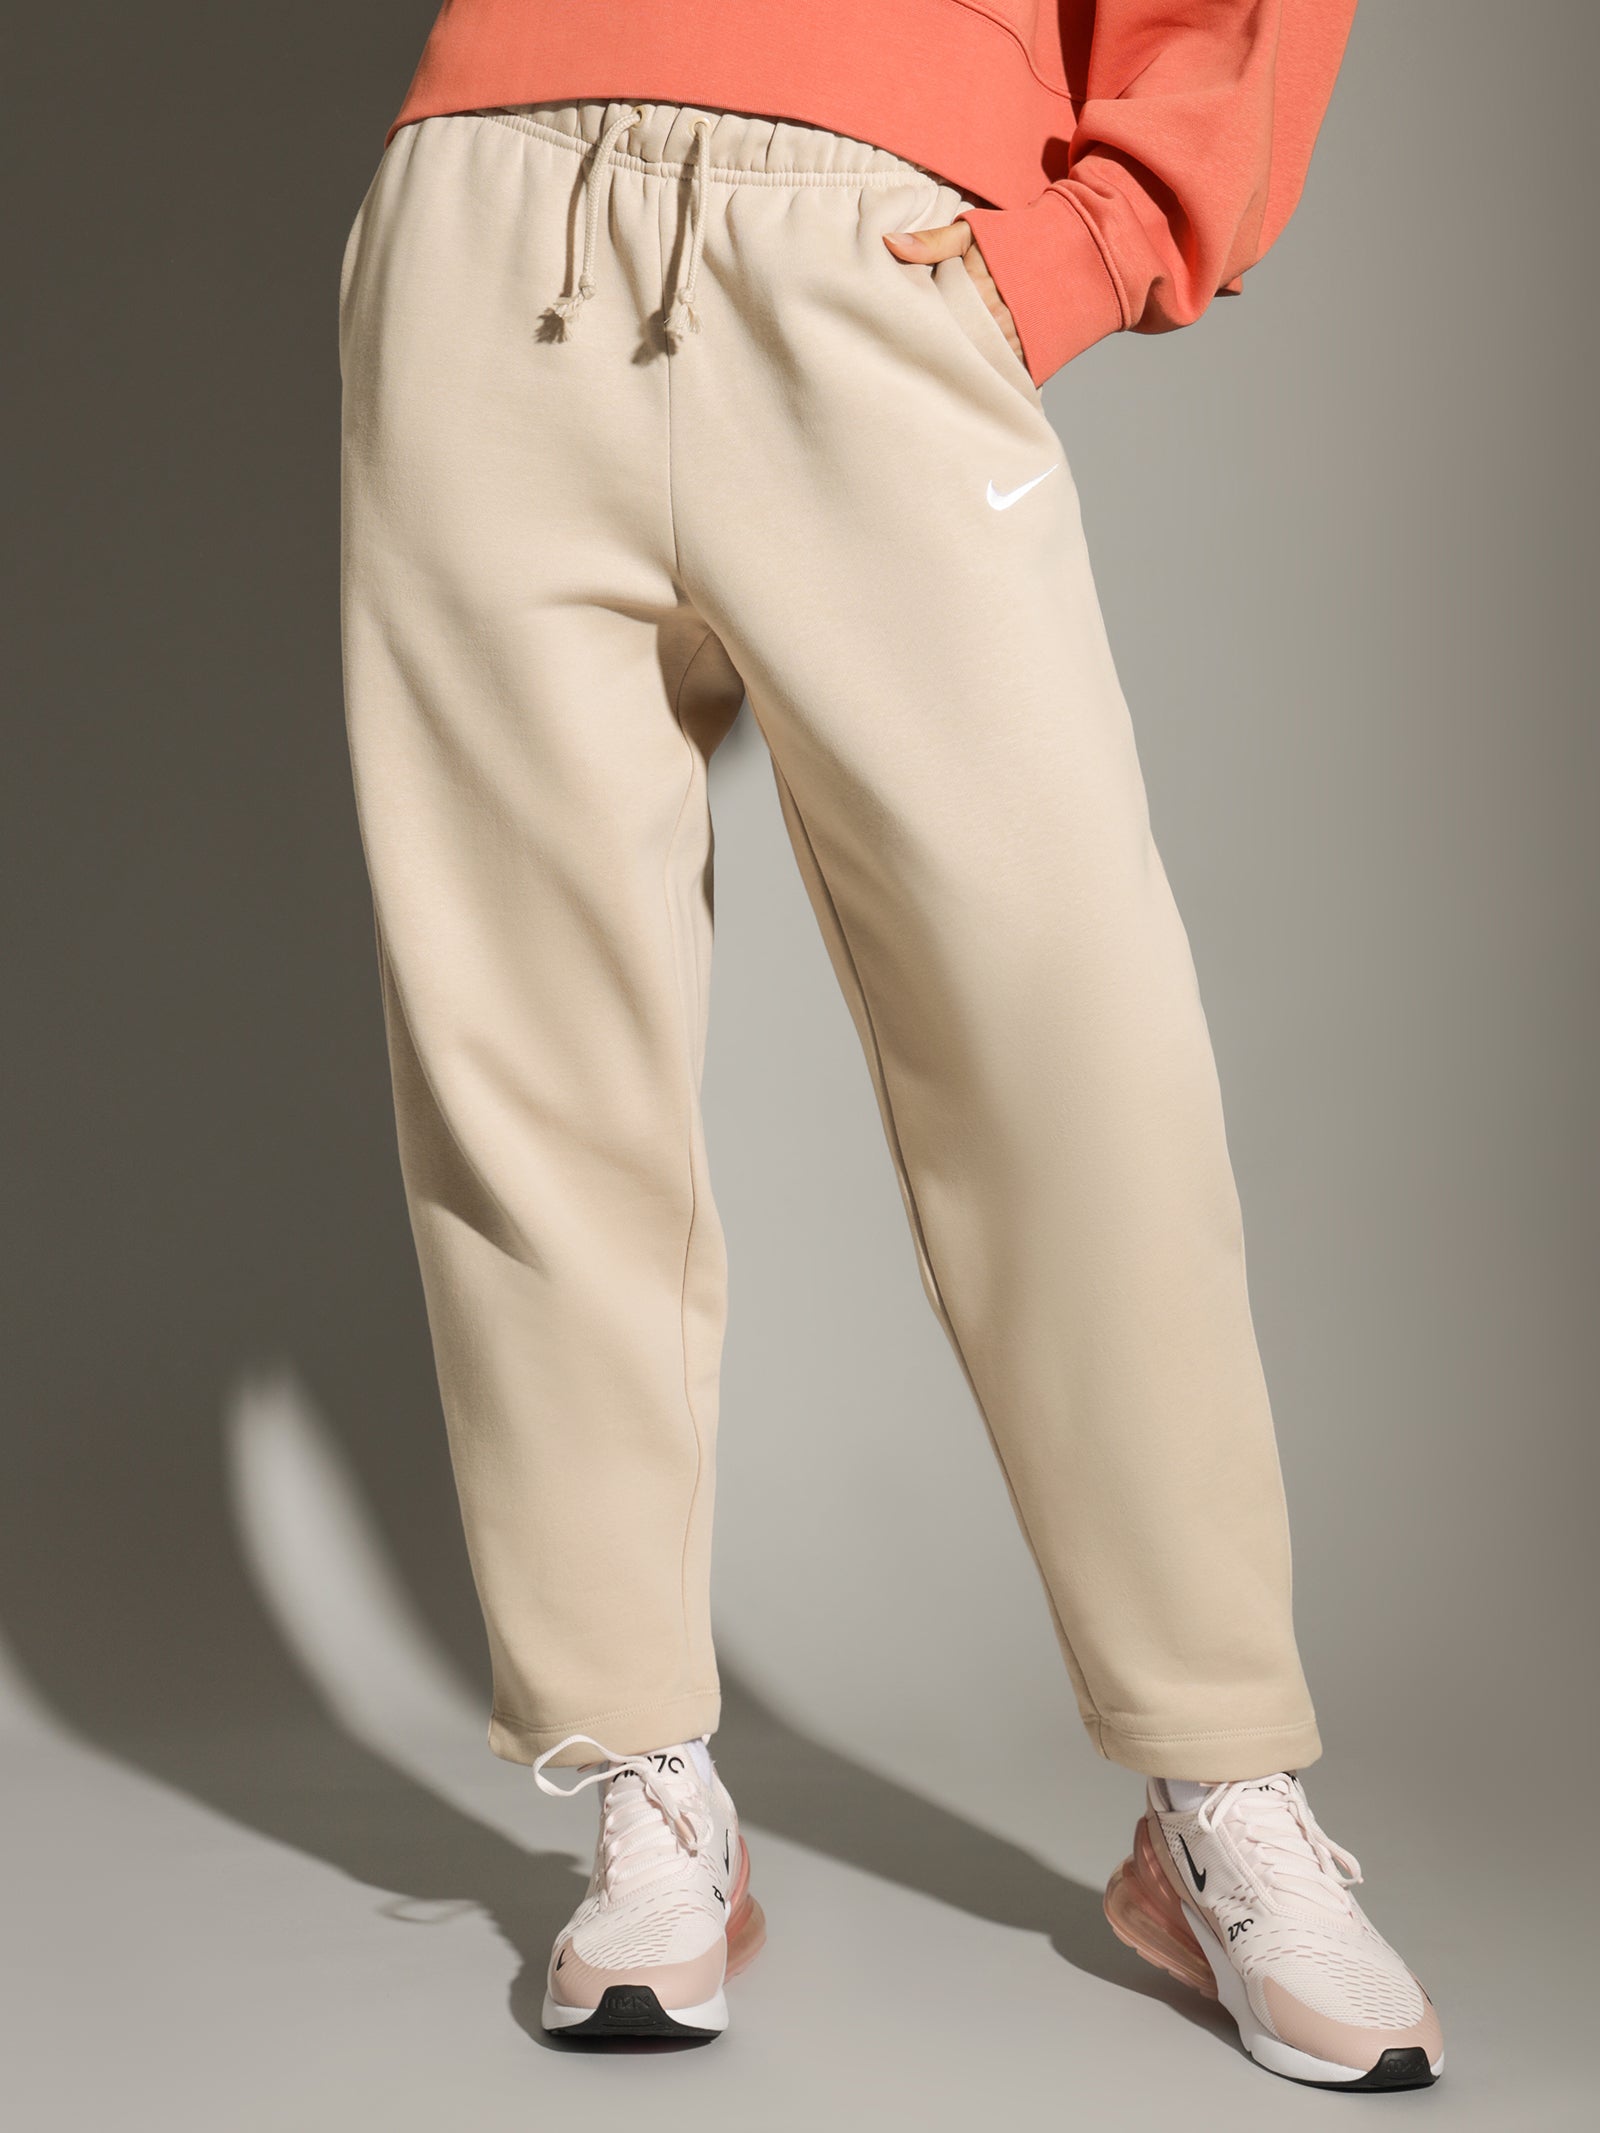 Women's Sportswear Essential Fleece Pant, Nike